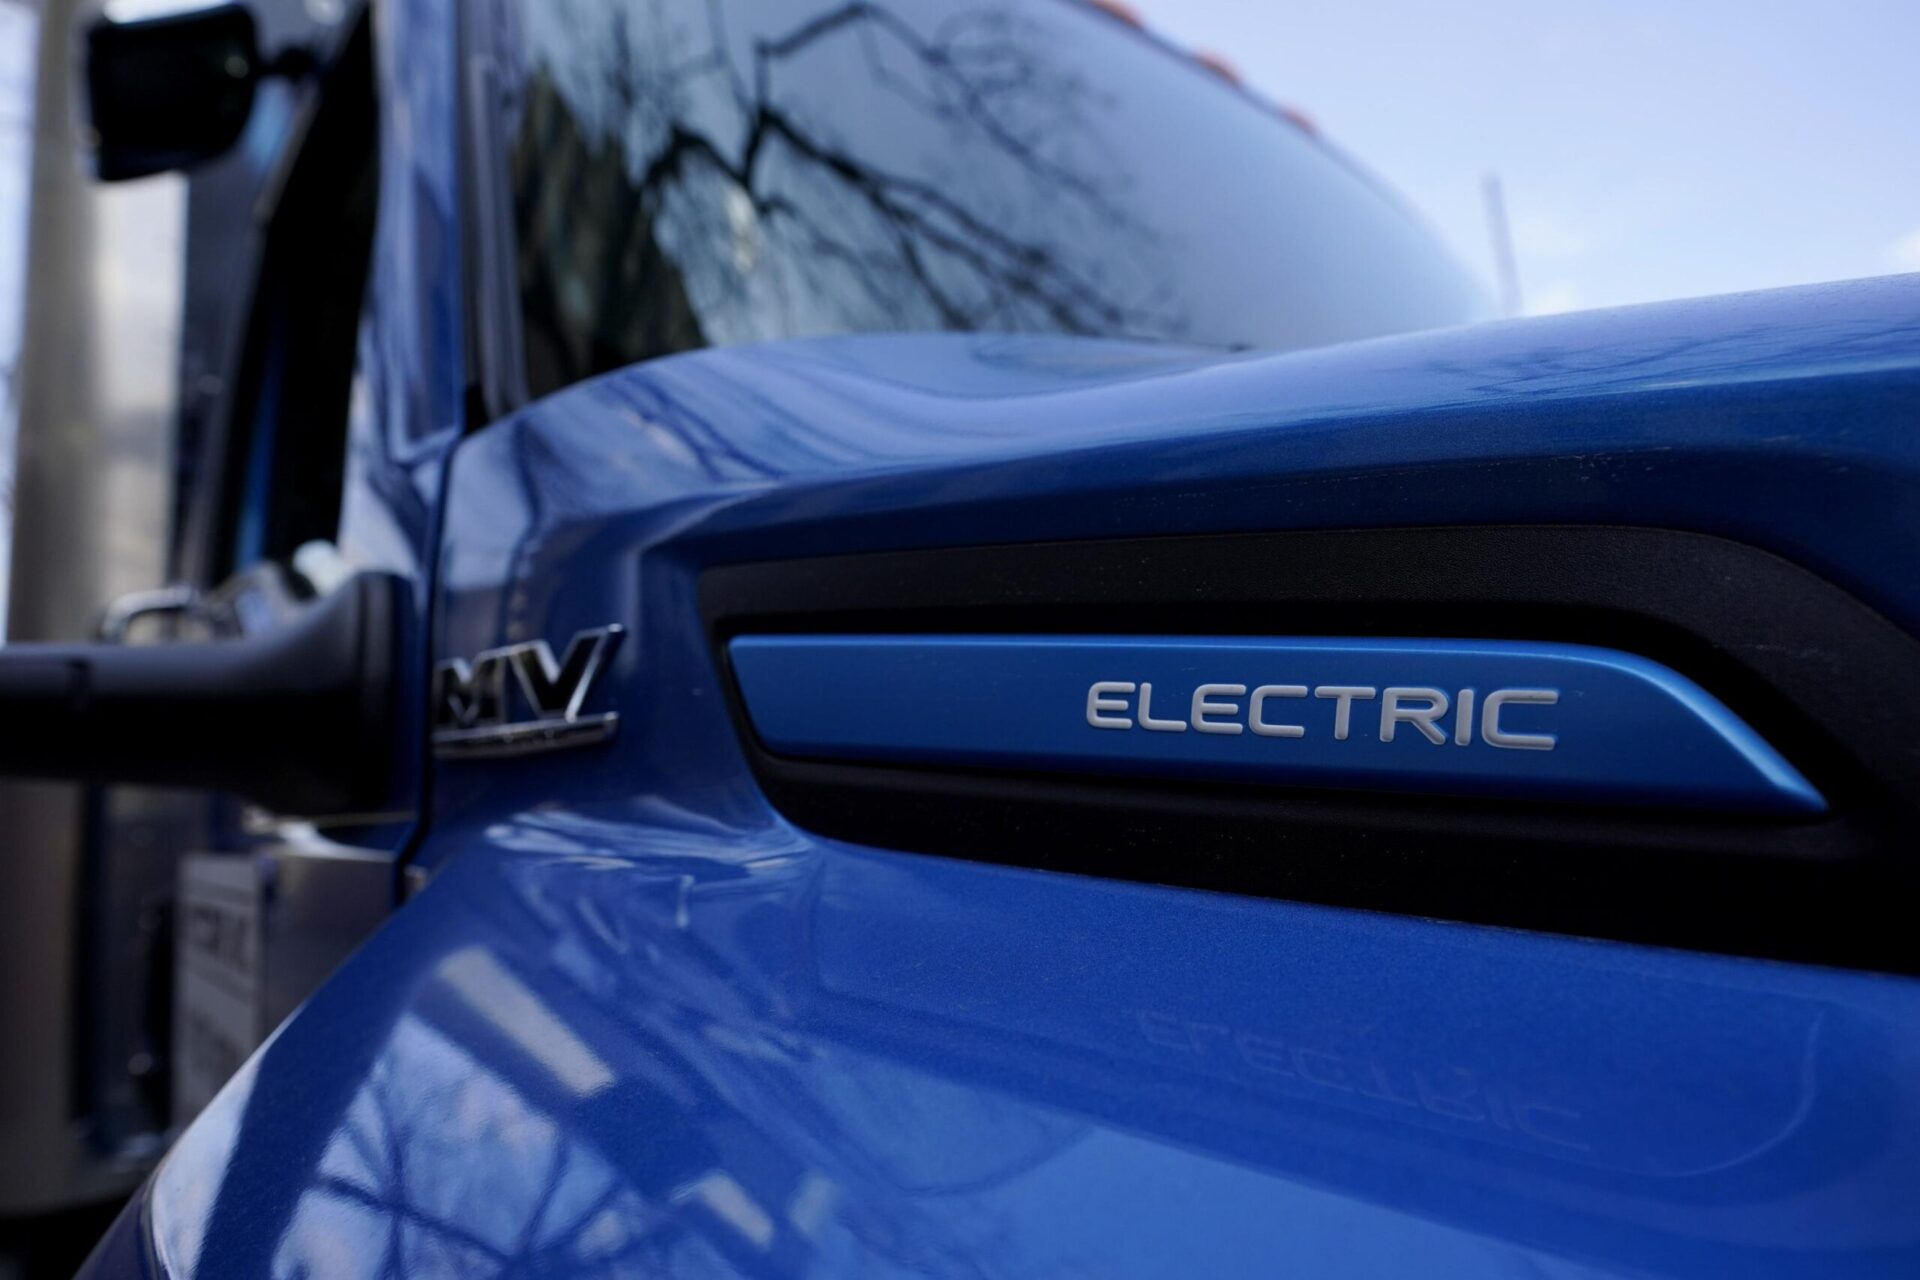 Fuentes AP: La regla de automóviles de la EPA impulsará un gran aumento en las ventas de vehículos eléctricos